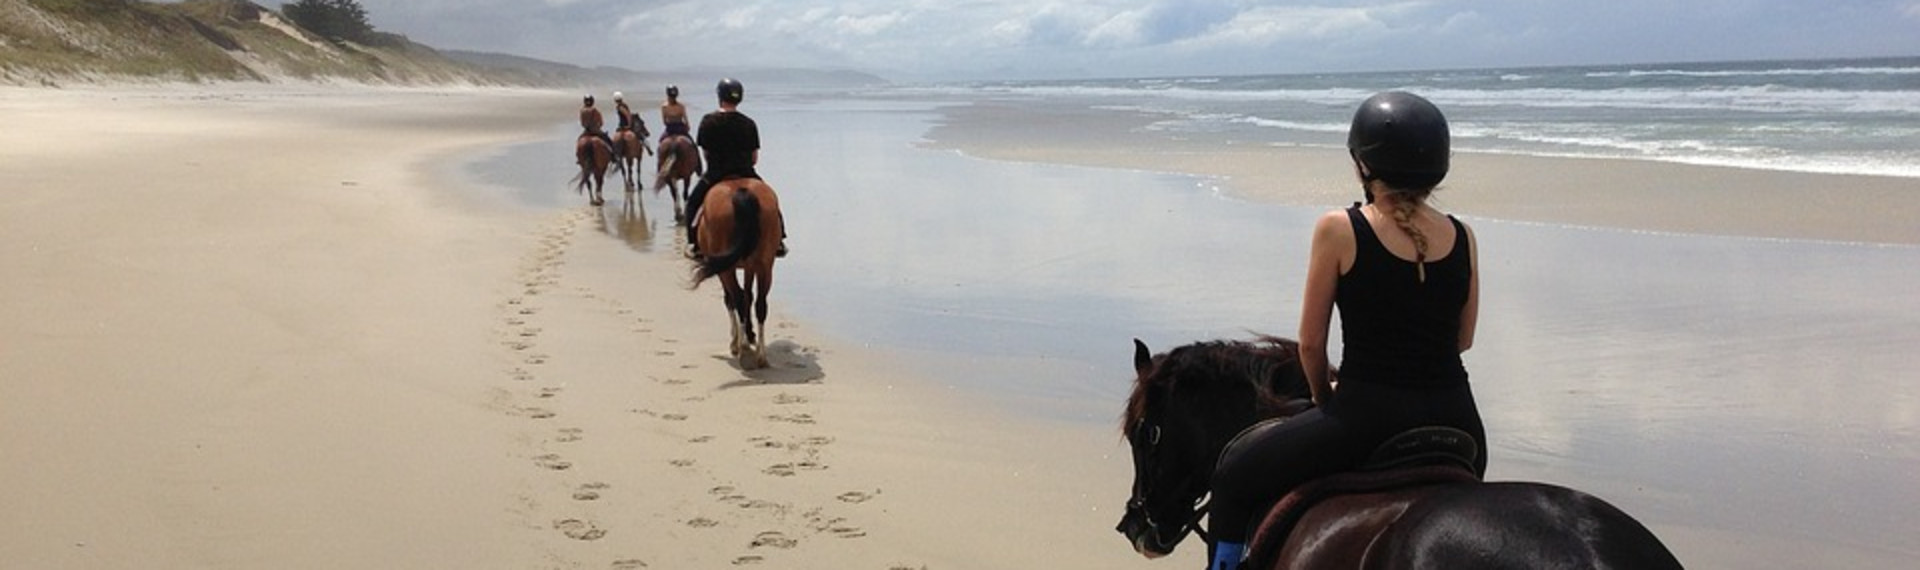 Beach Horse Riding In Mallorca